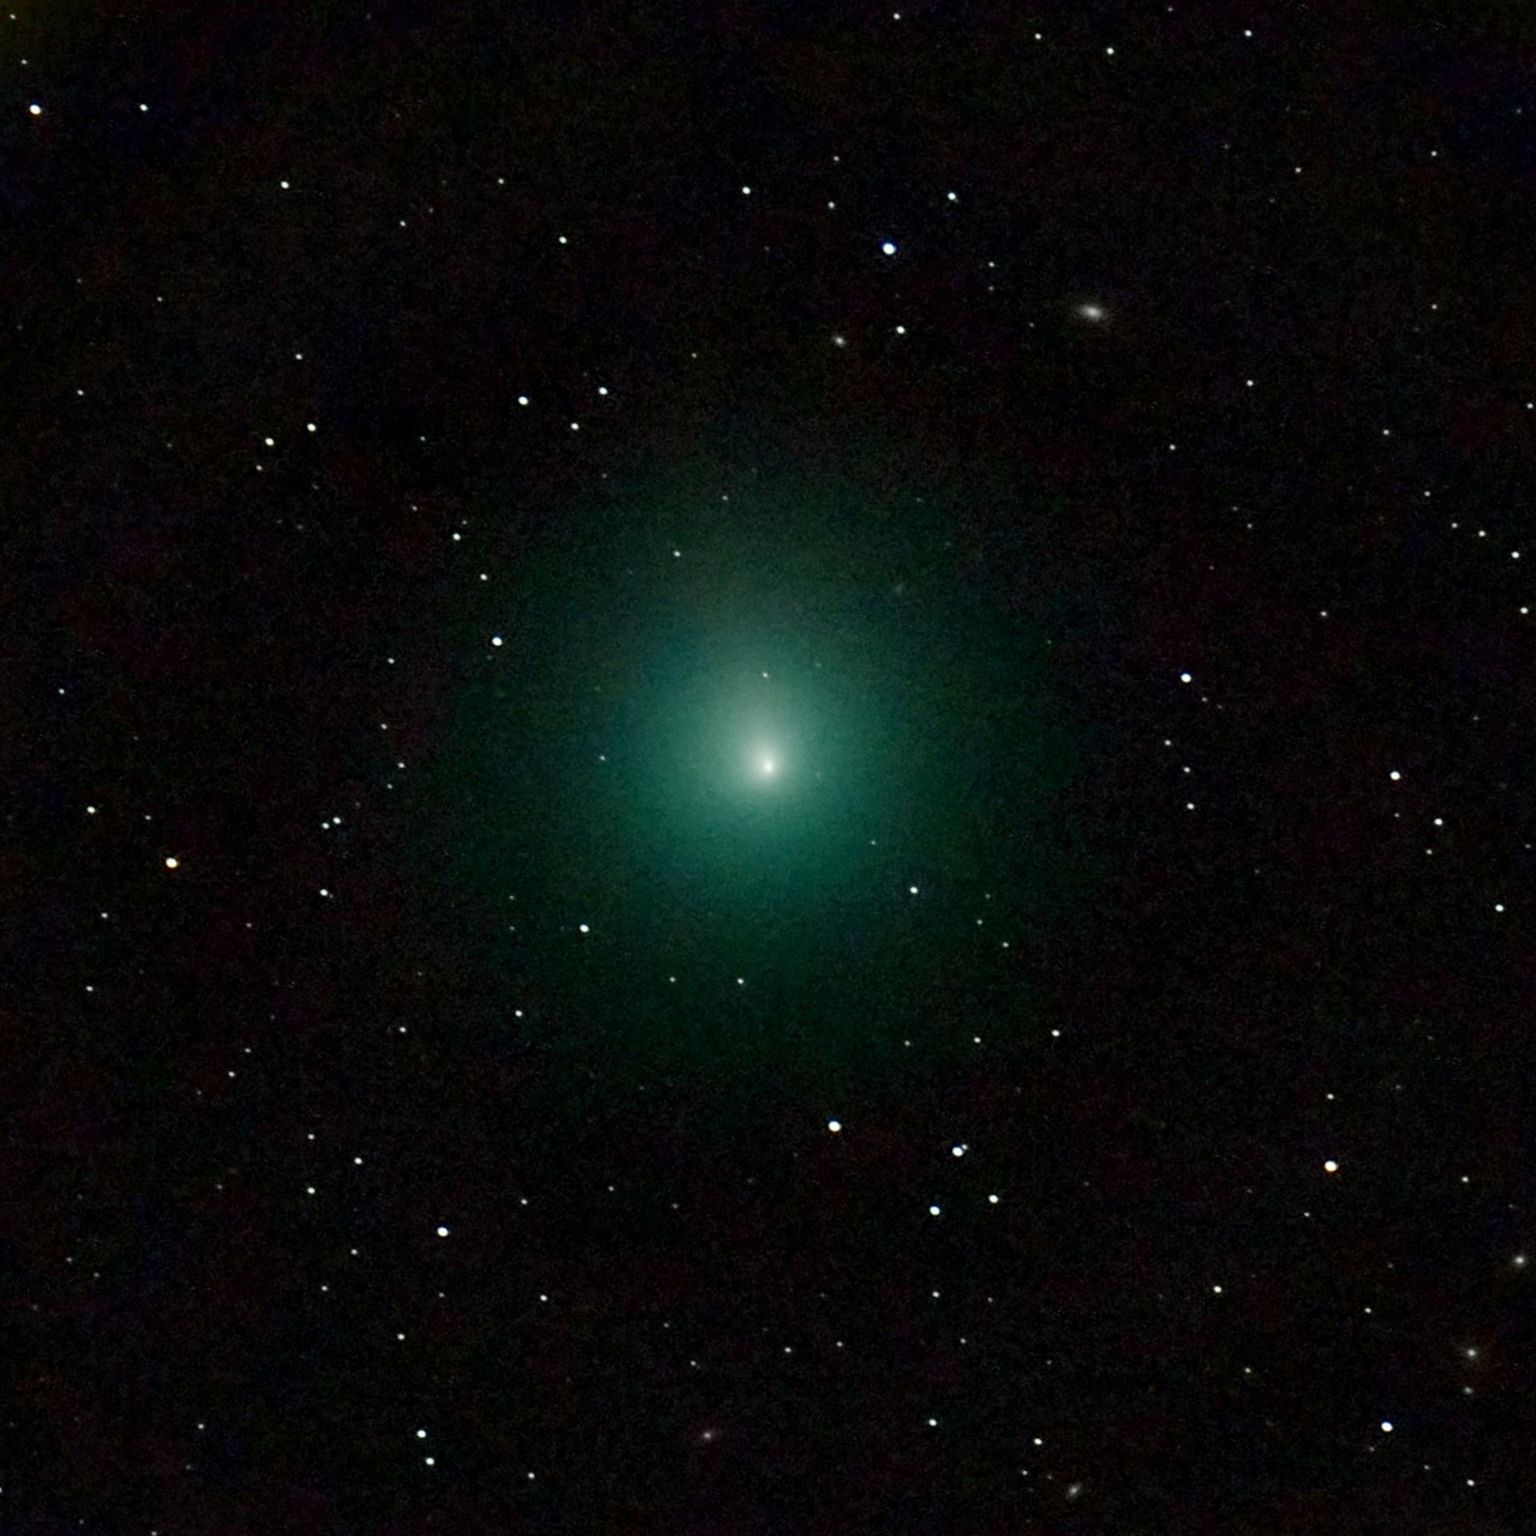 Komeet 46P/Wirtanen möödus maast 2018. aasta detsembris. Selle suurimaks liikumiskiiruseks päikesesüsteemis oli üle 37 km/s.